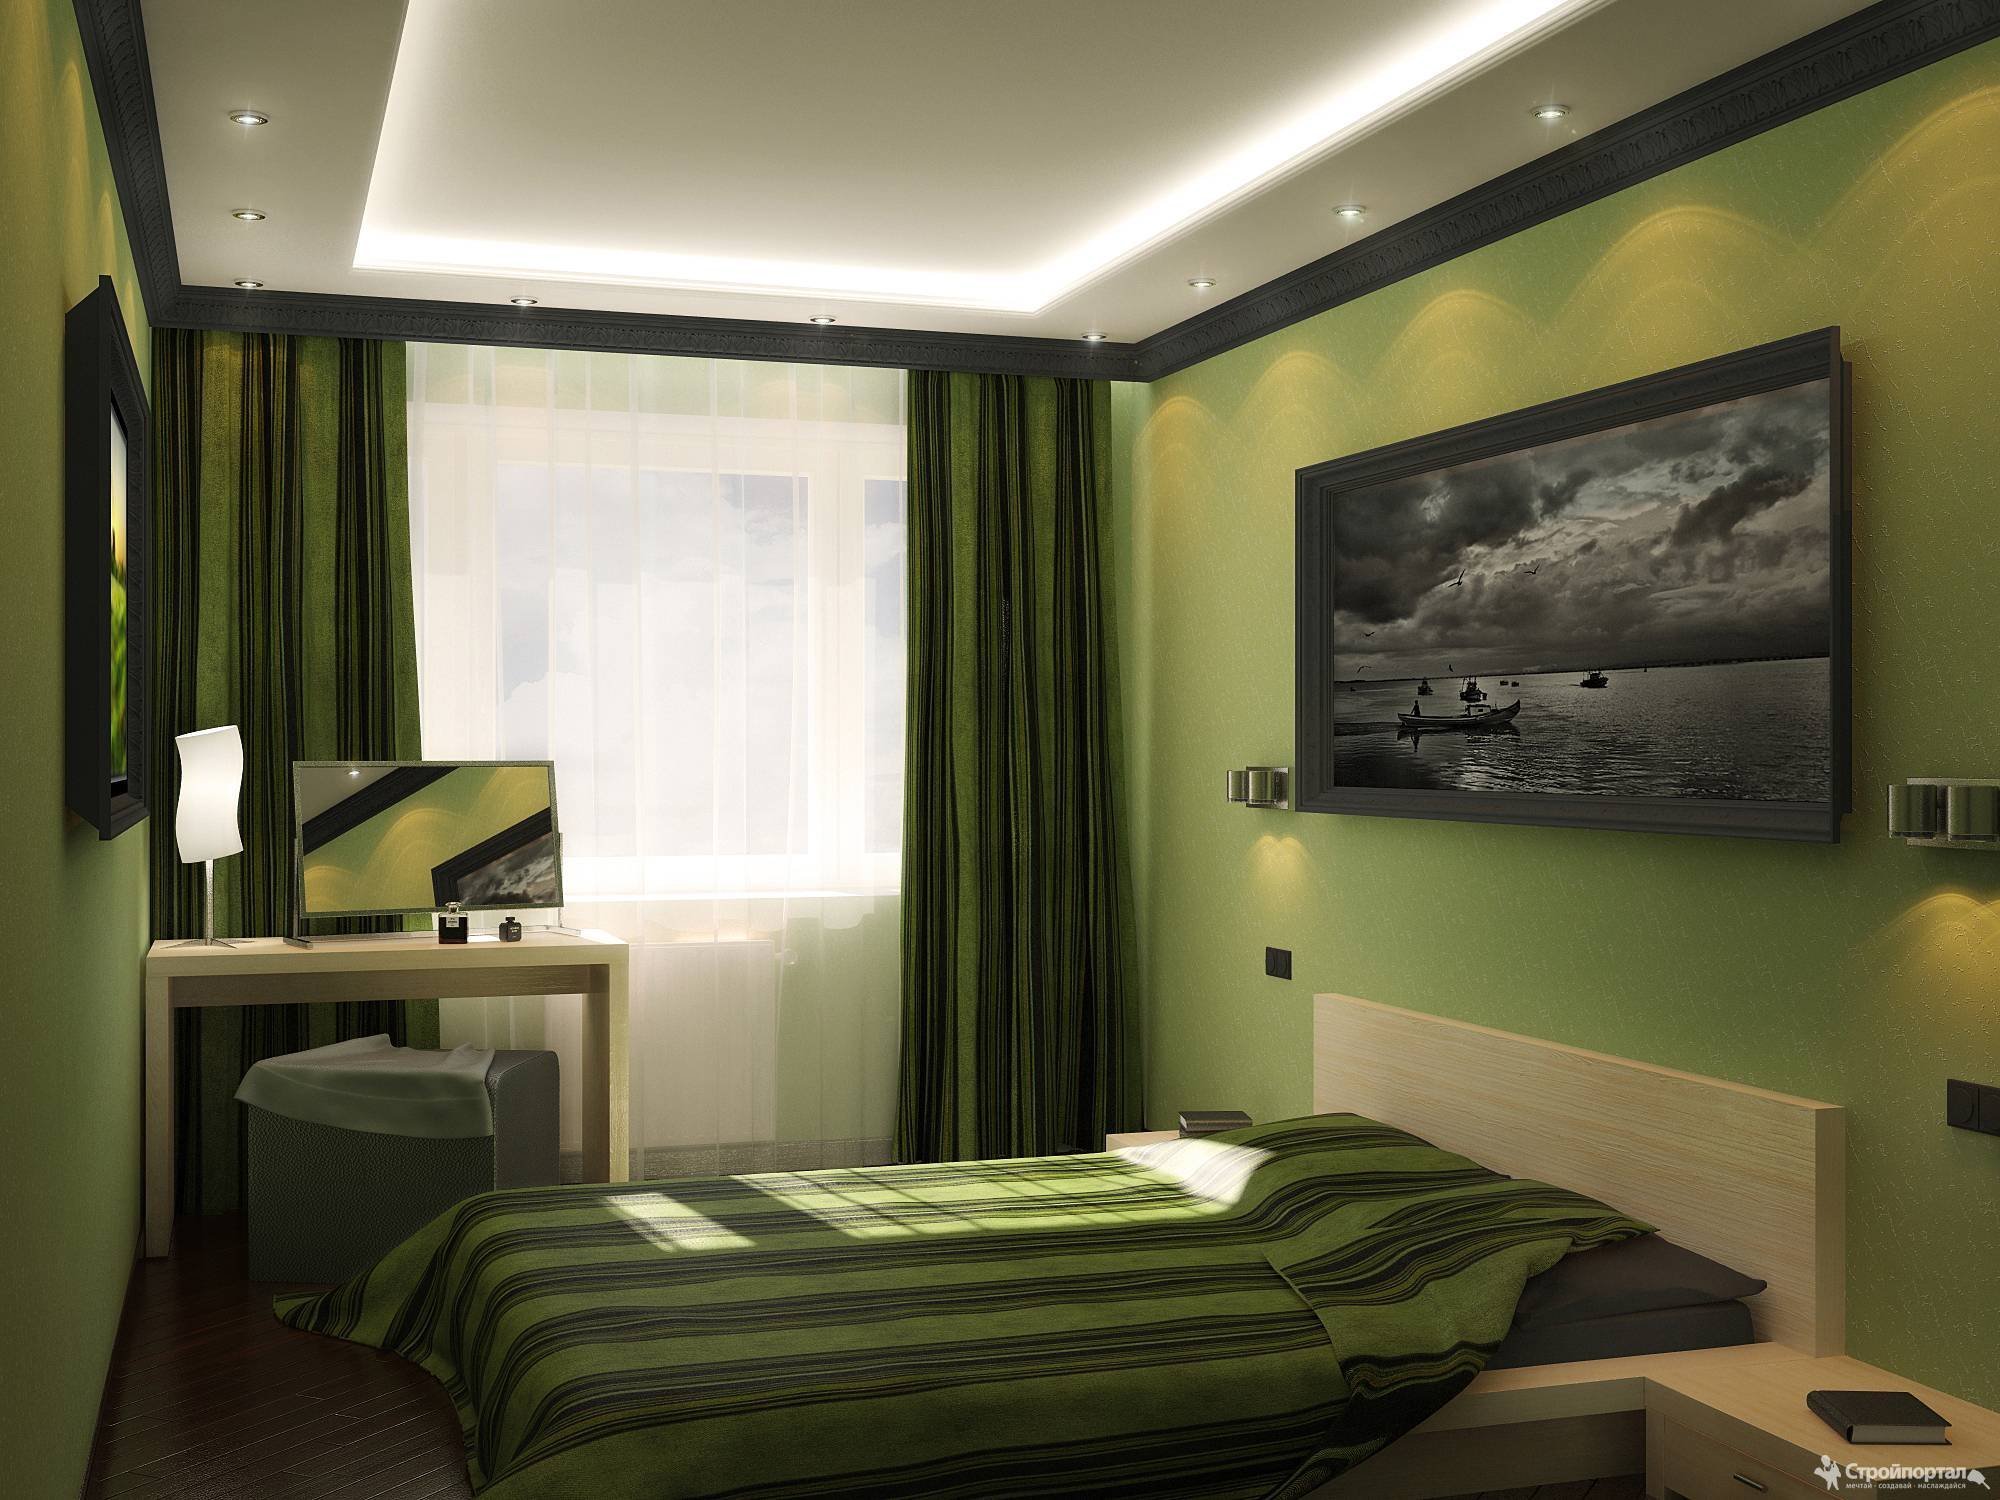 Обстановка комнаты 4 на 4. Спальня 15 кв м. Узкая спальня. Спальня в зеленых тонах. Спальня в салатовых тонах.